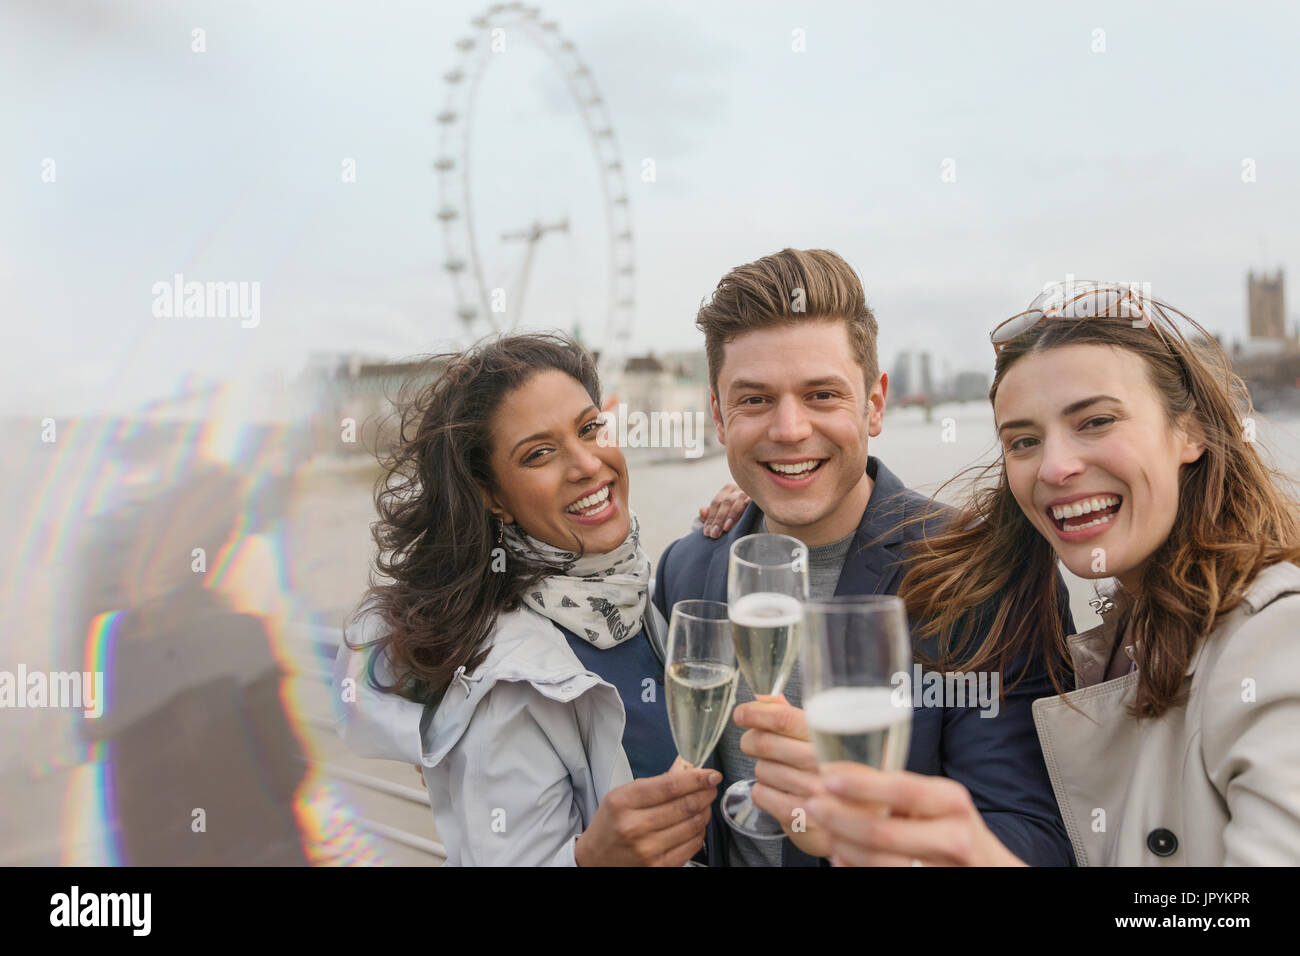 Portrait enthousiaste, smiling friends toasting champagne, près de roue du millénaire, London, UK Banque D'Images